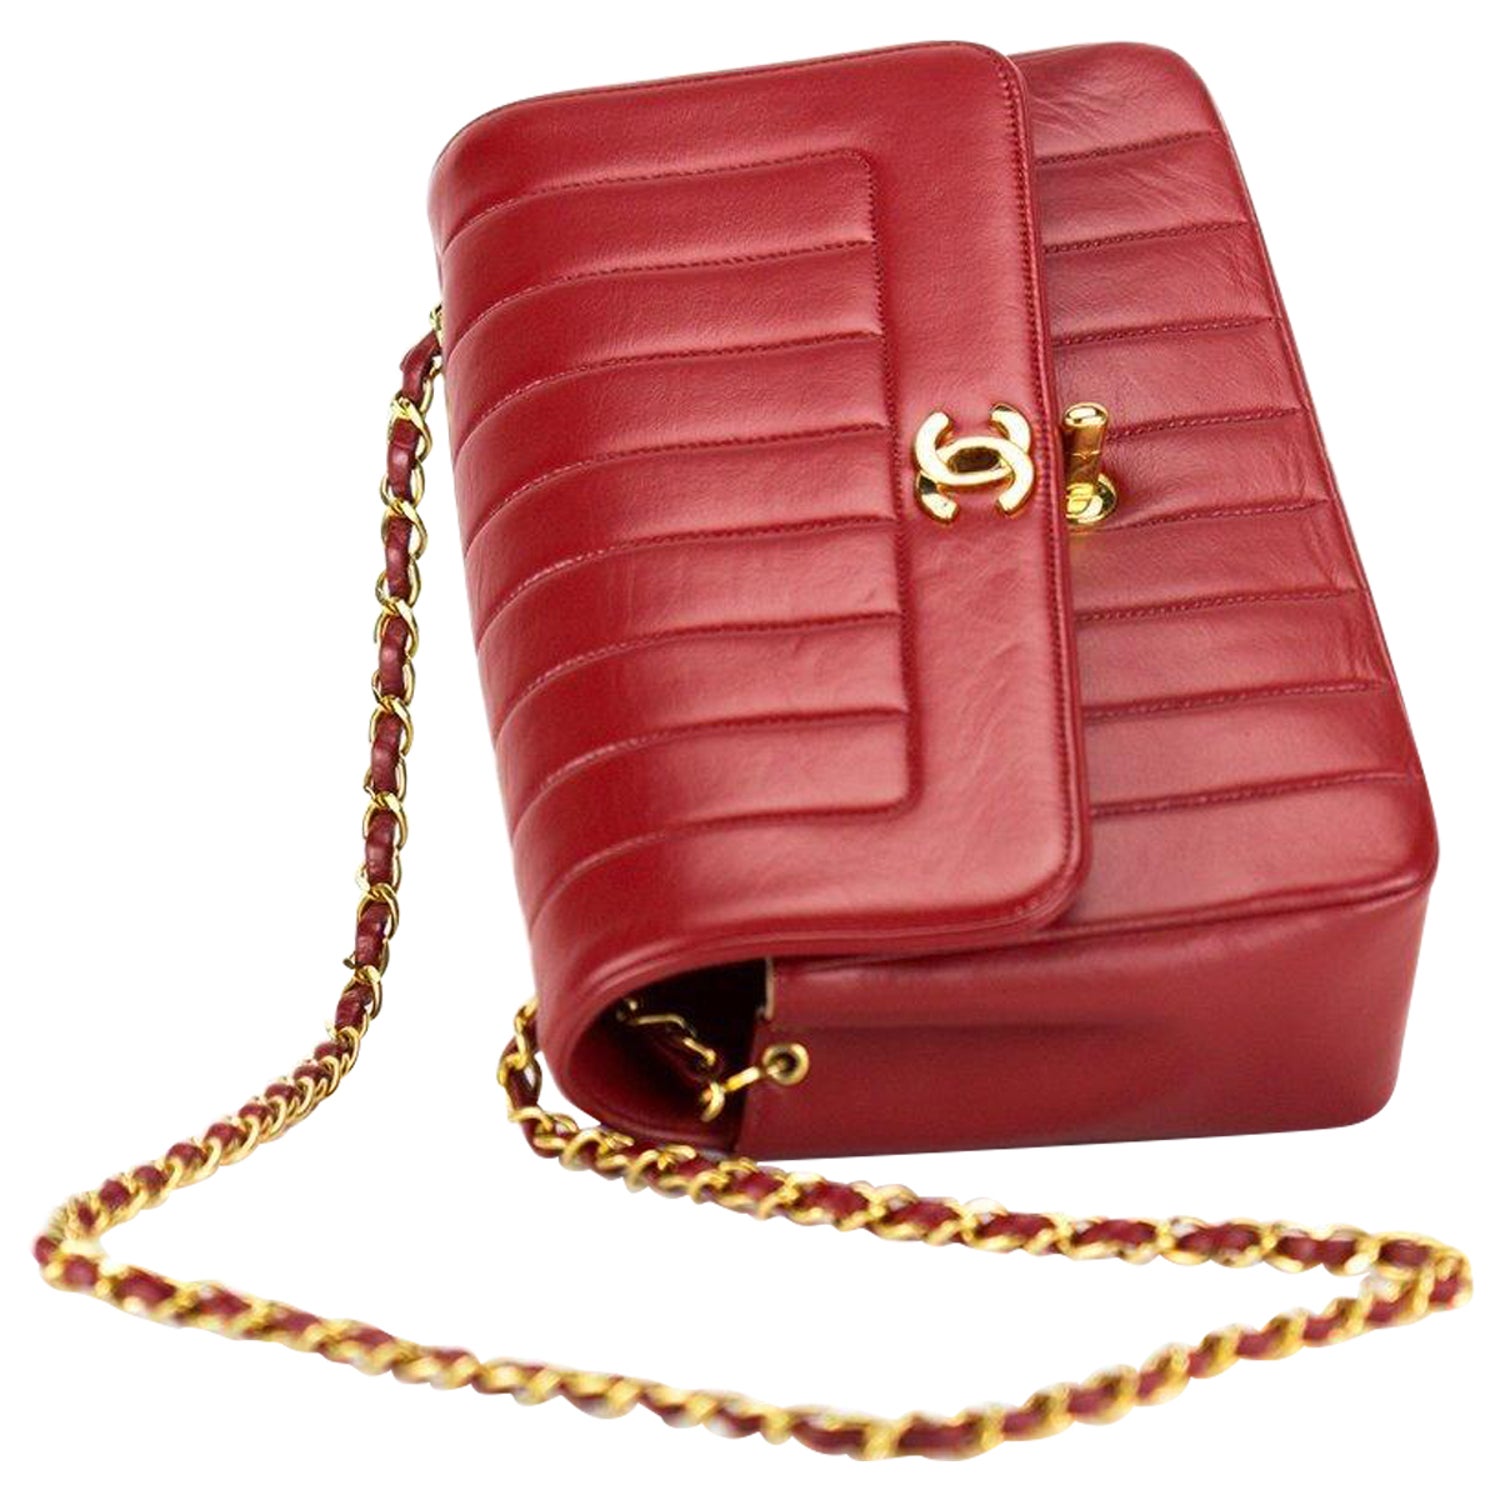 Chanel Stripe Flap Bag - 7 For Sale on 1stDibs